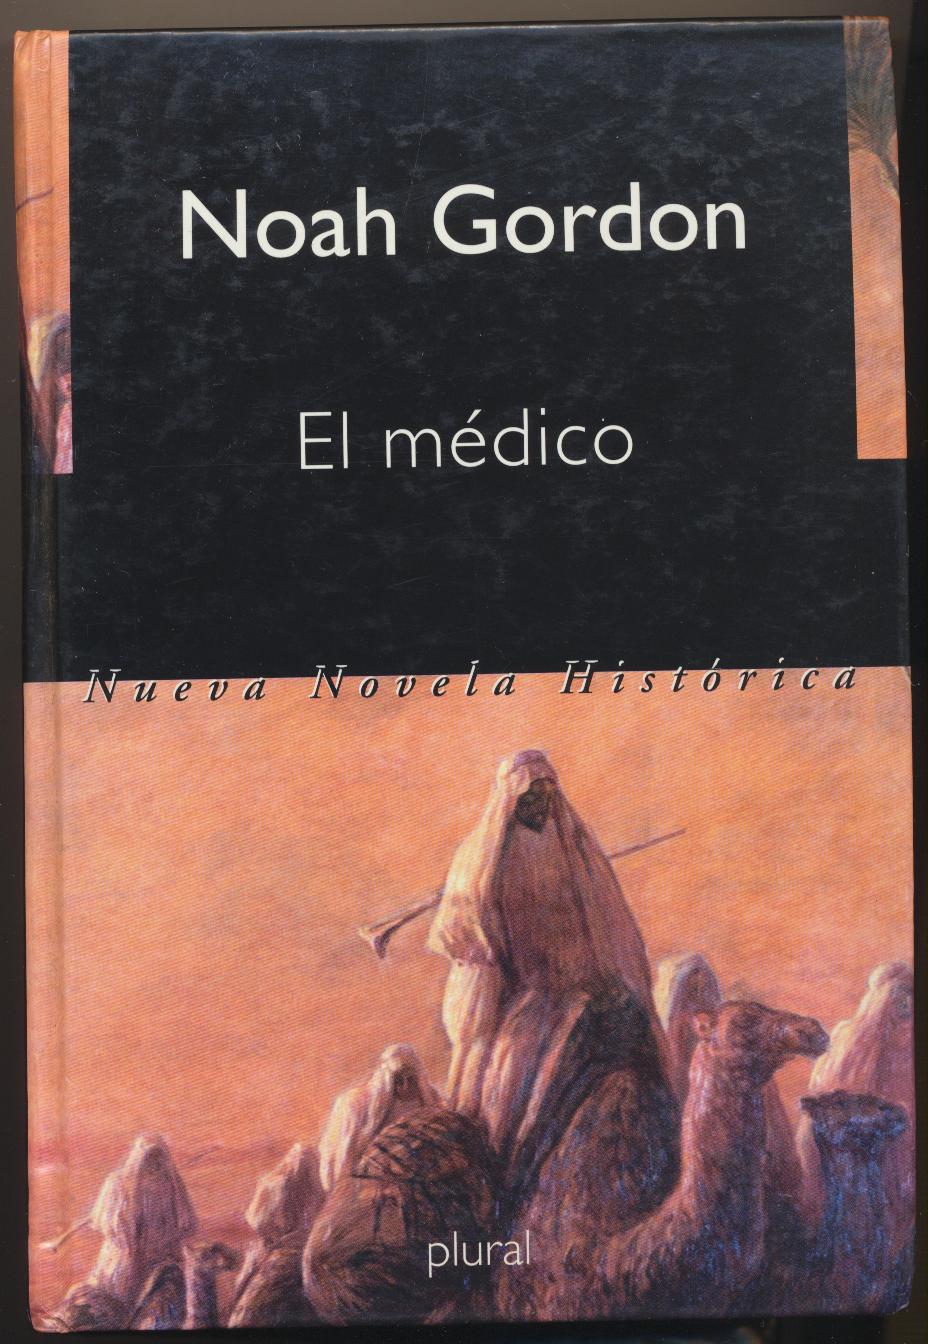 Noah Gordon. El Médico. 1ª Edición Plural 1992